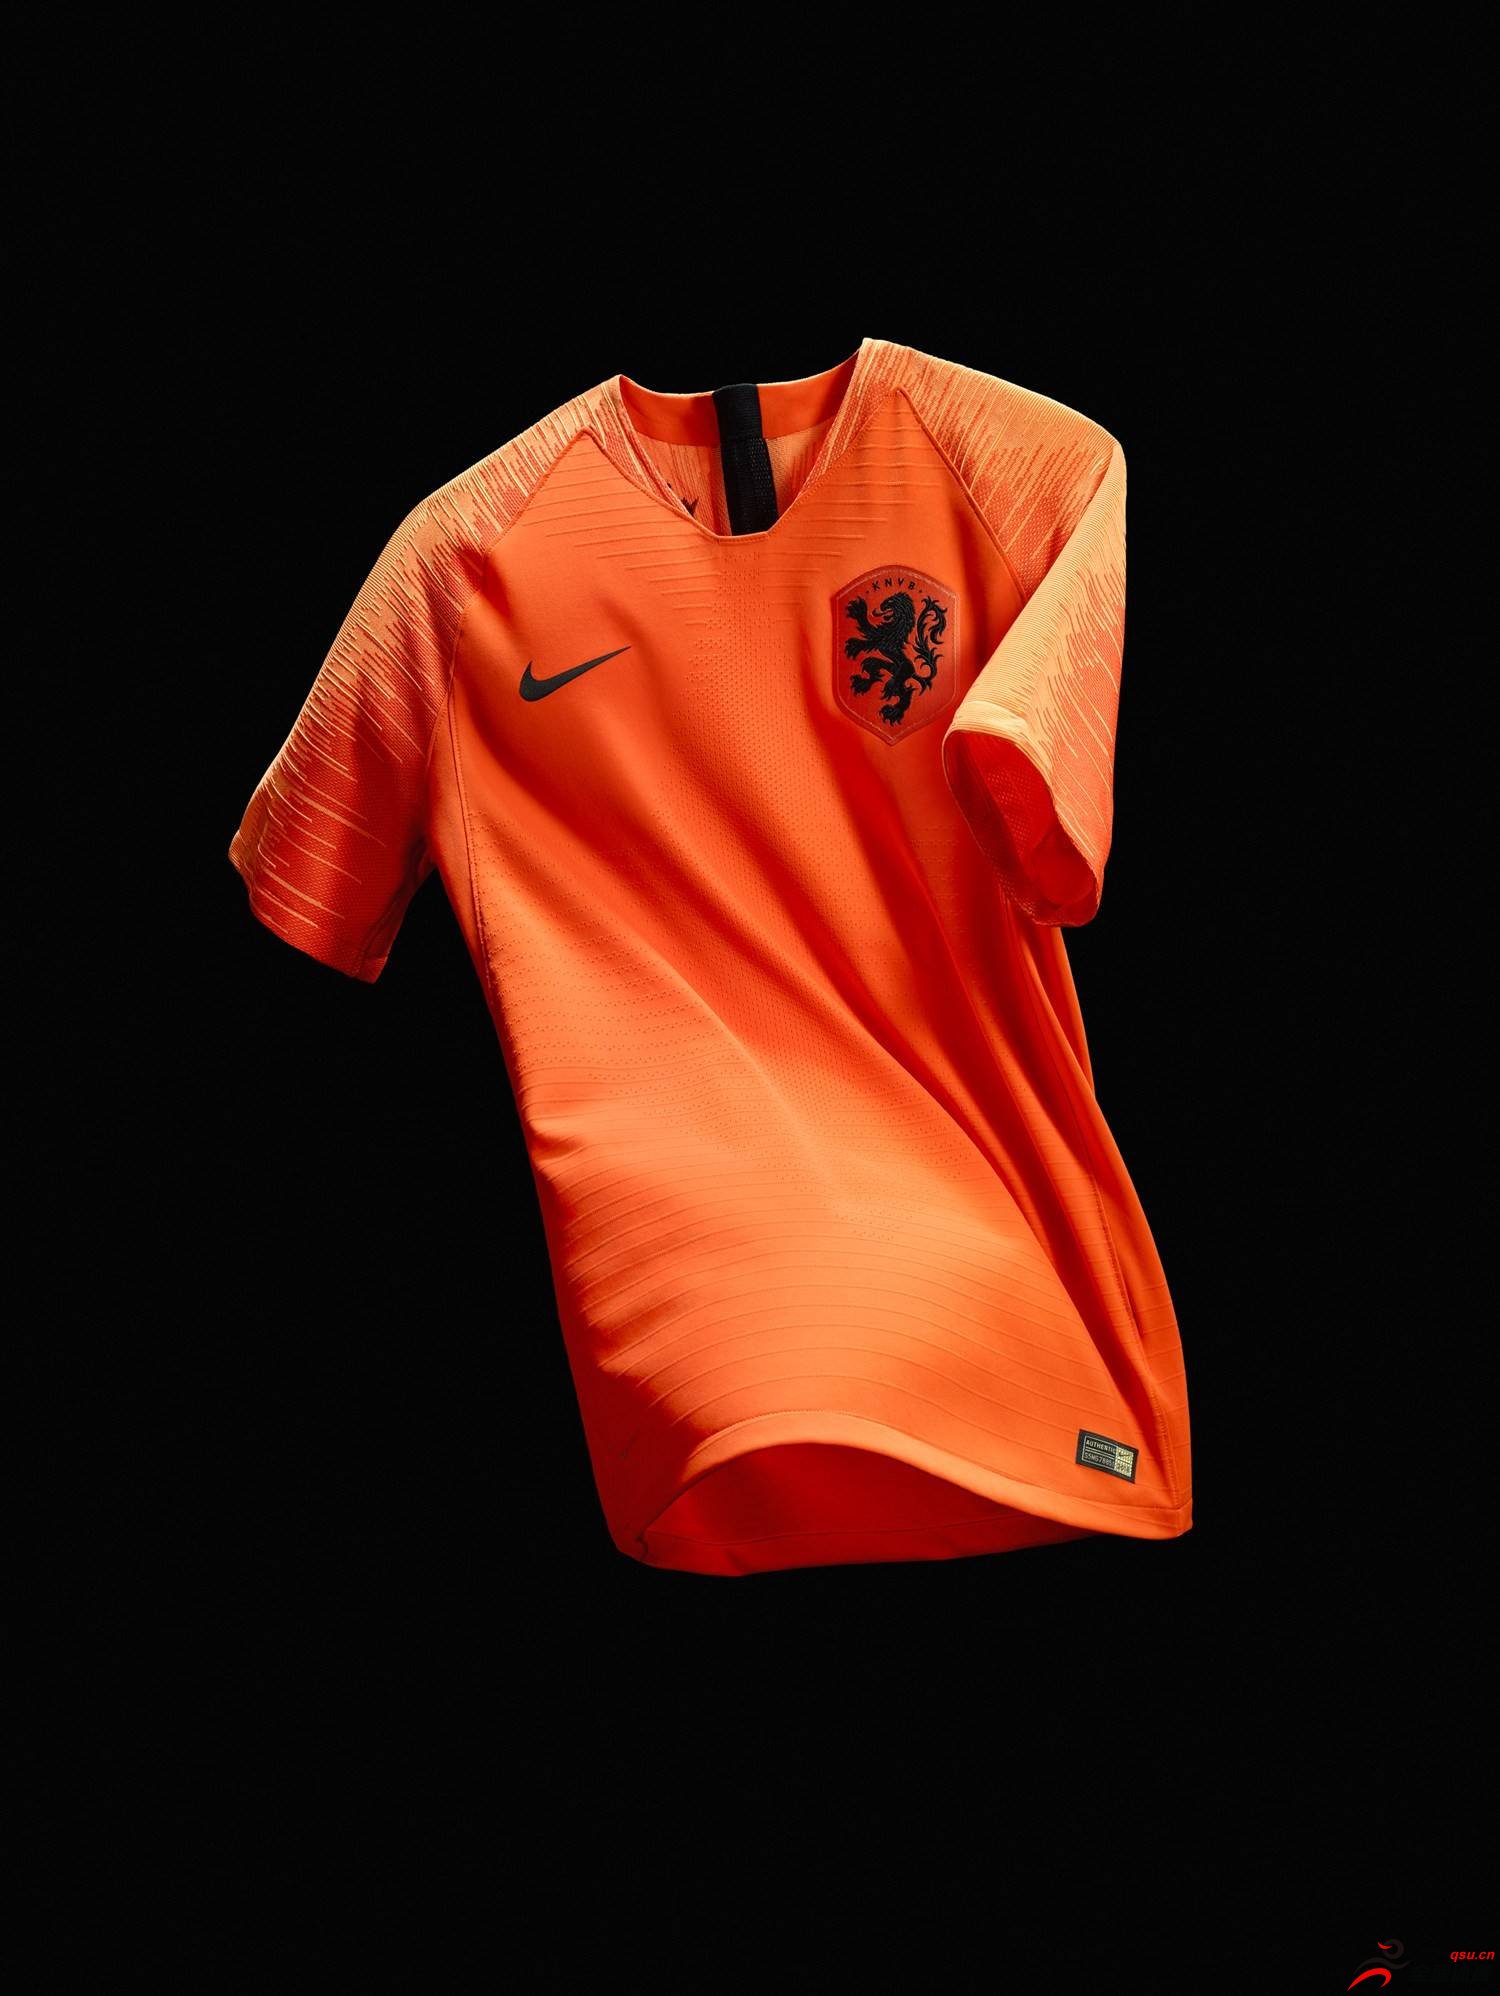 耐克与皇家荷兰足球协会携手发布荷兰国家队2018全新主客场球衣